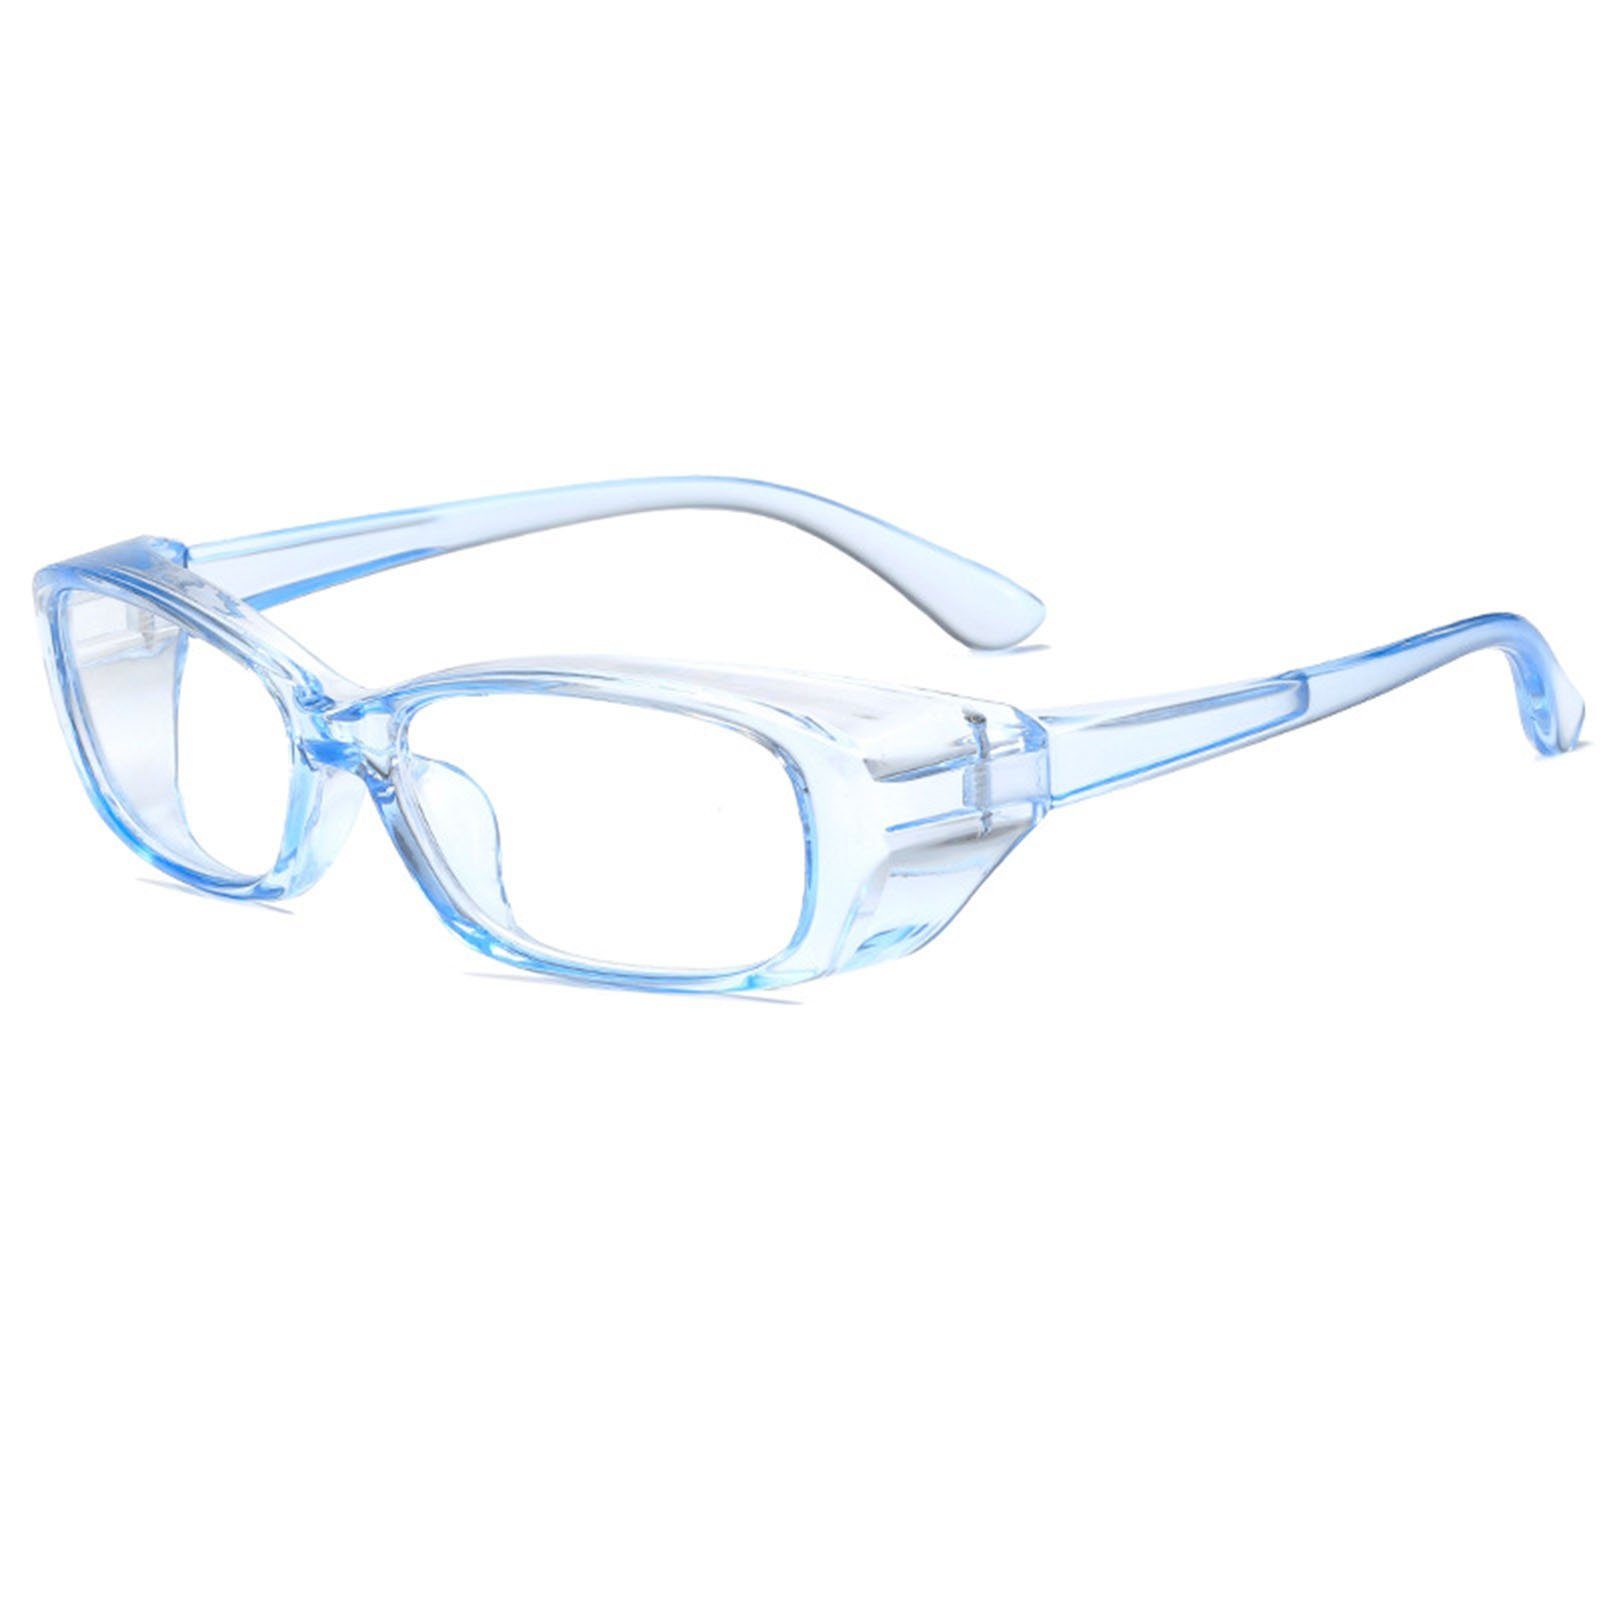 Brille transparent blue Außenbereich, Bequeme, Den Brille Anti-Beschlag-Schutzbrille Für Blusmart